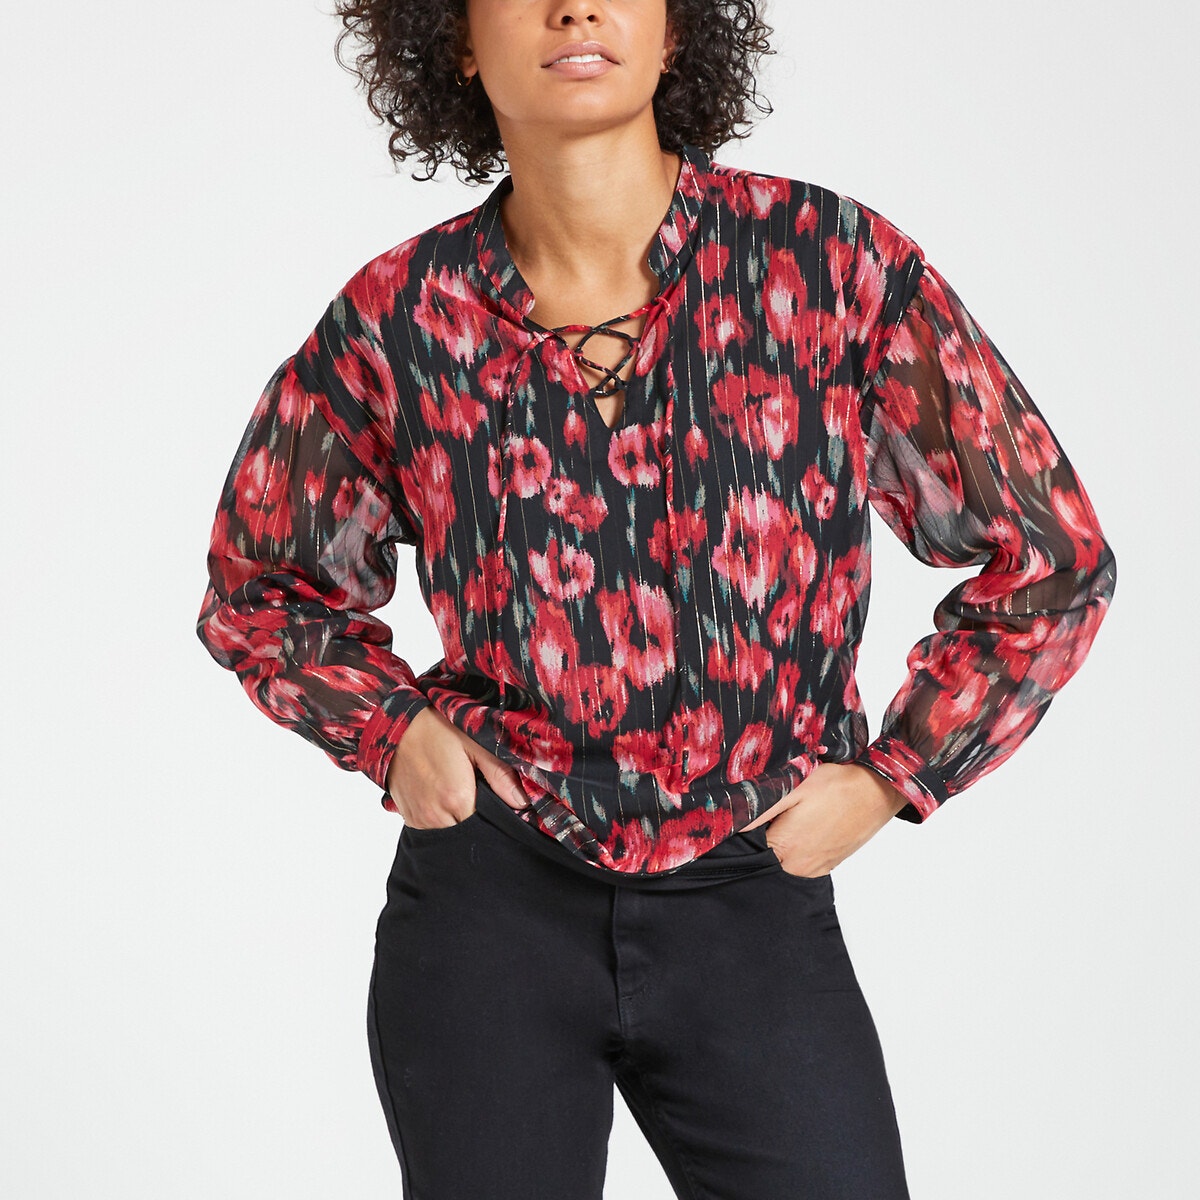 Μακρυμάνικη μπλούζα με στρογγυλή λαιμόκοψη και φλοράλ μοτίβο